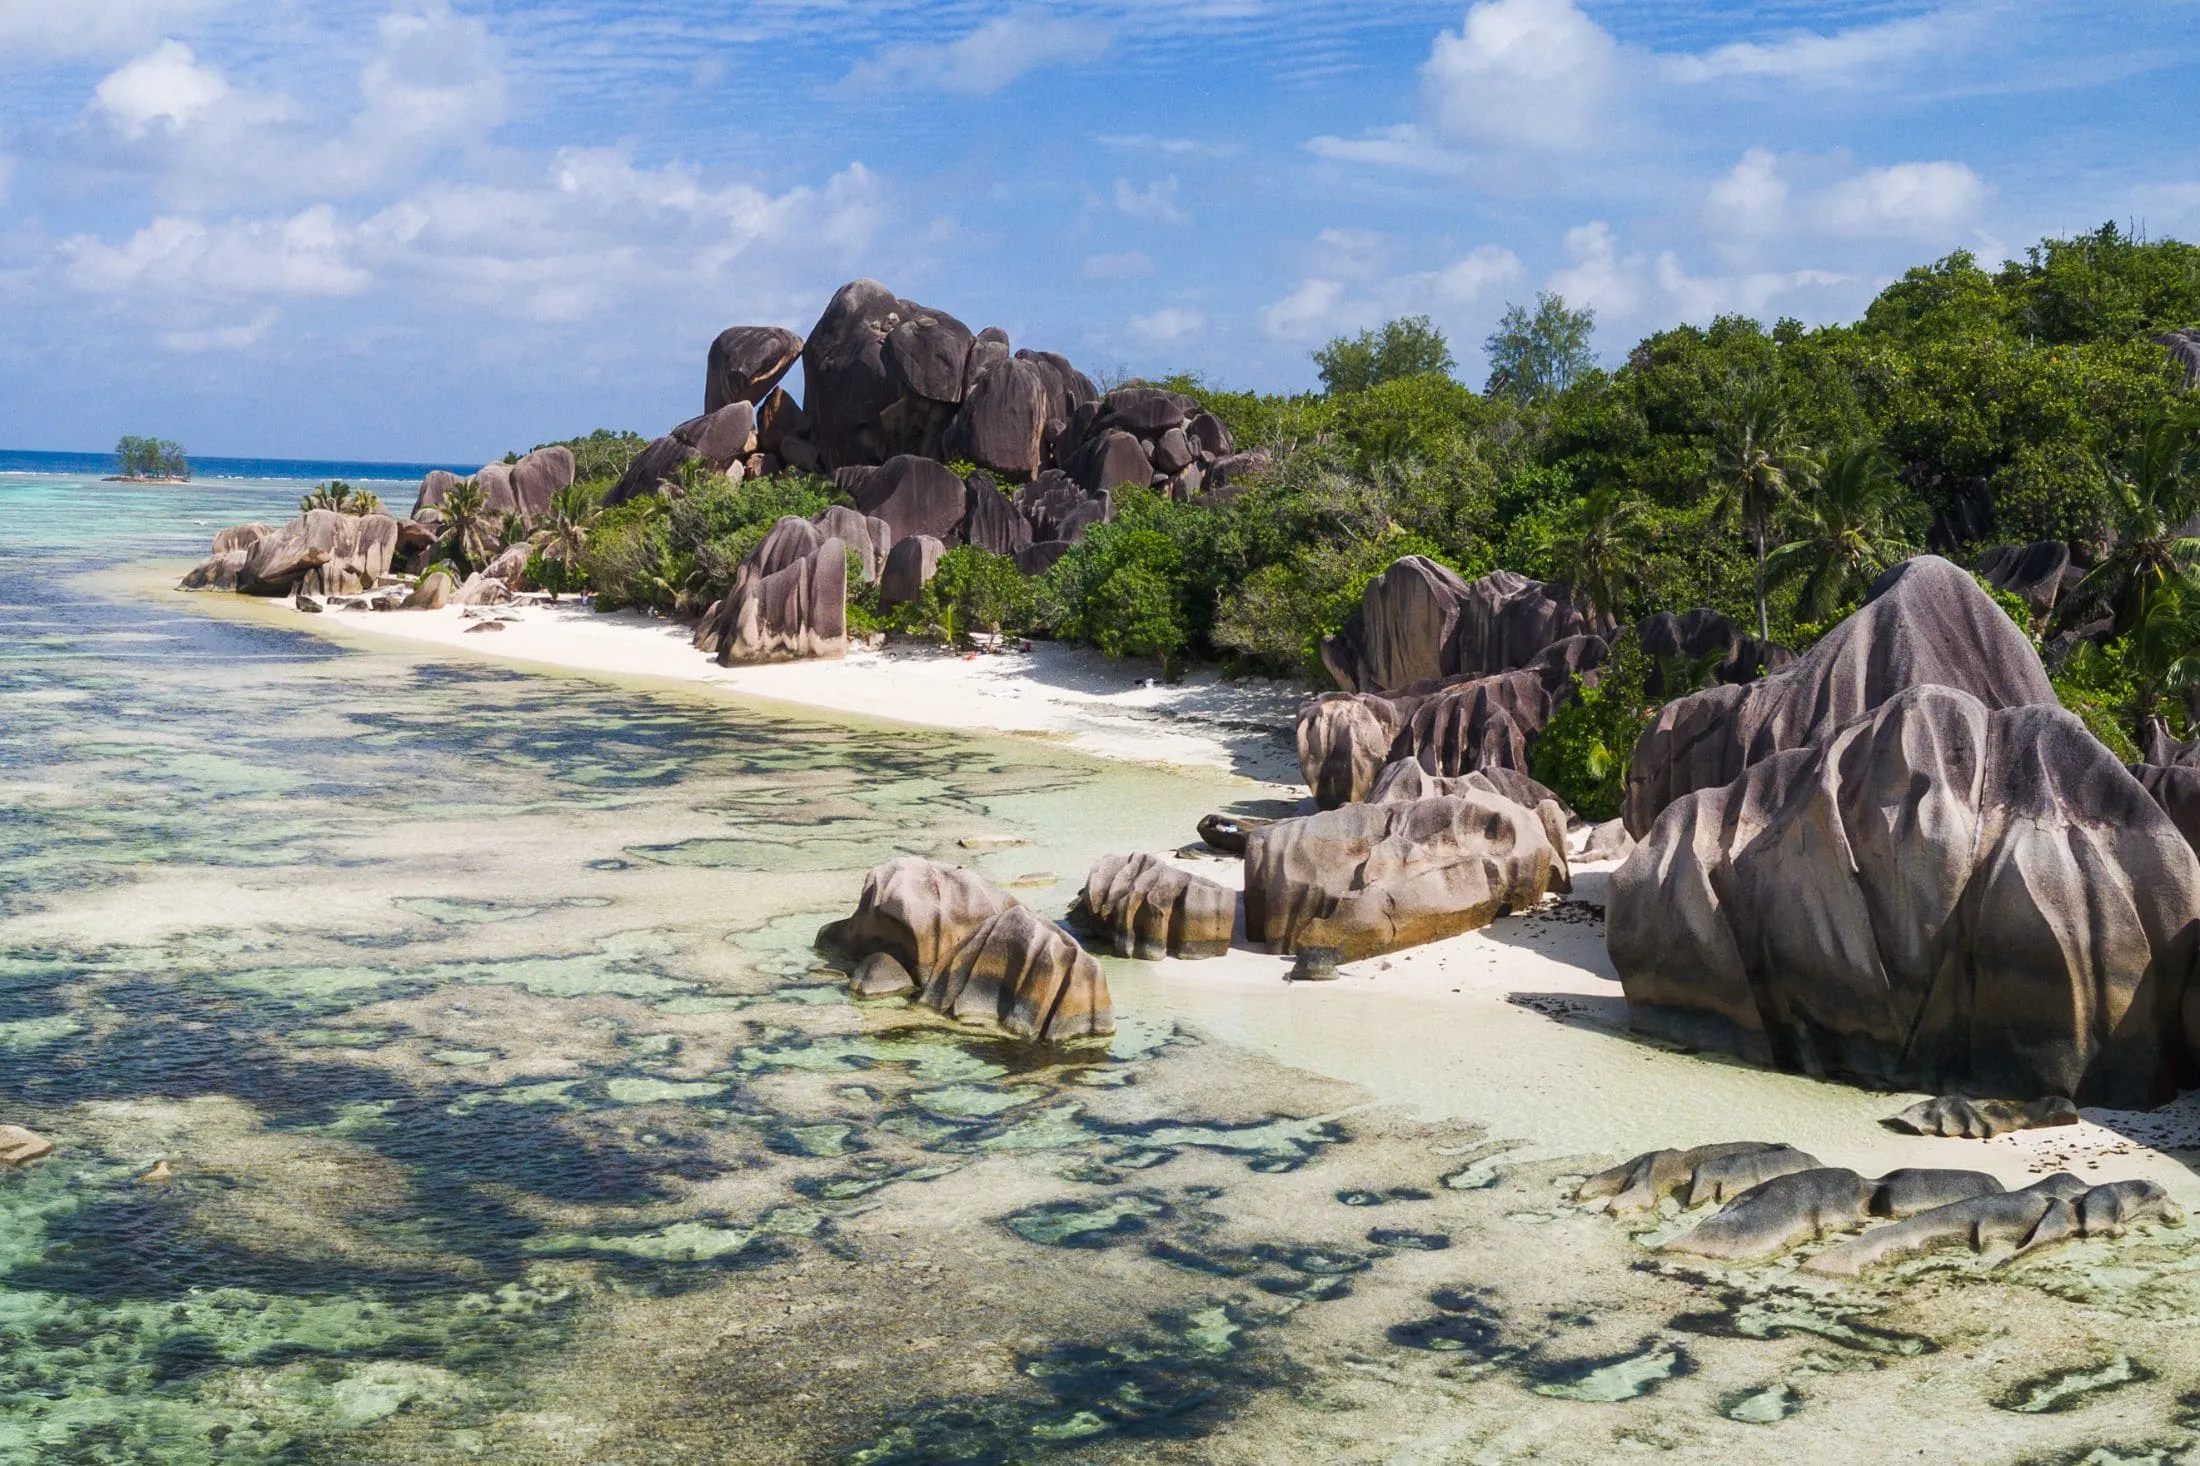 Seychelles island beach during a sunny day